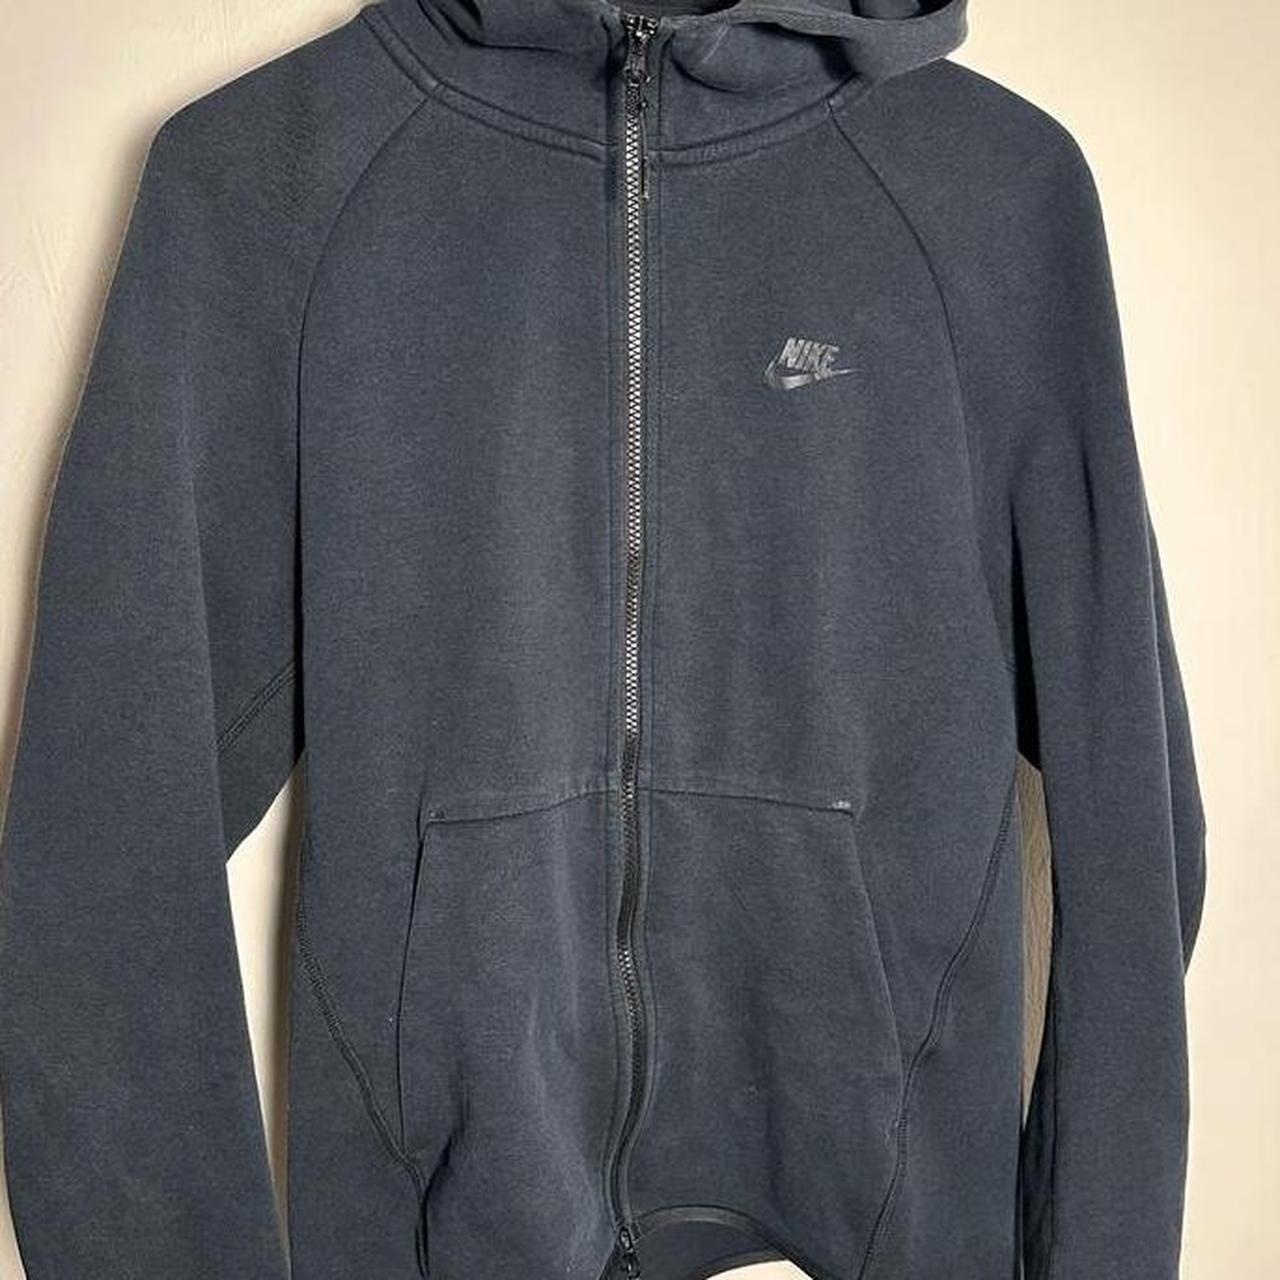 Black Nike Tech Fleece Jacket Old Season Size... - Depop